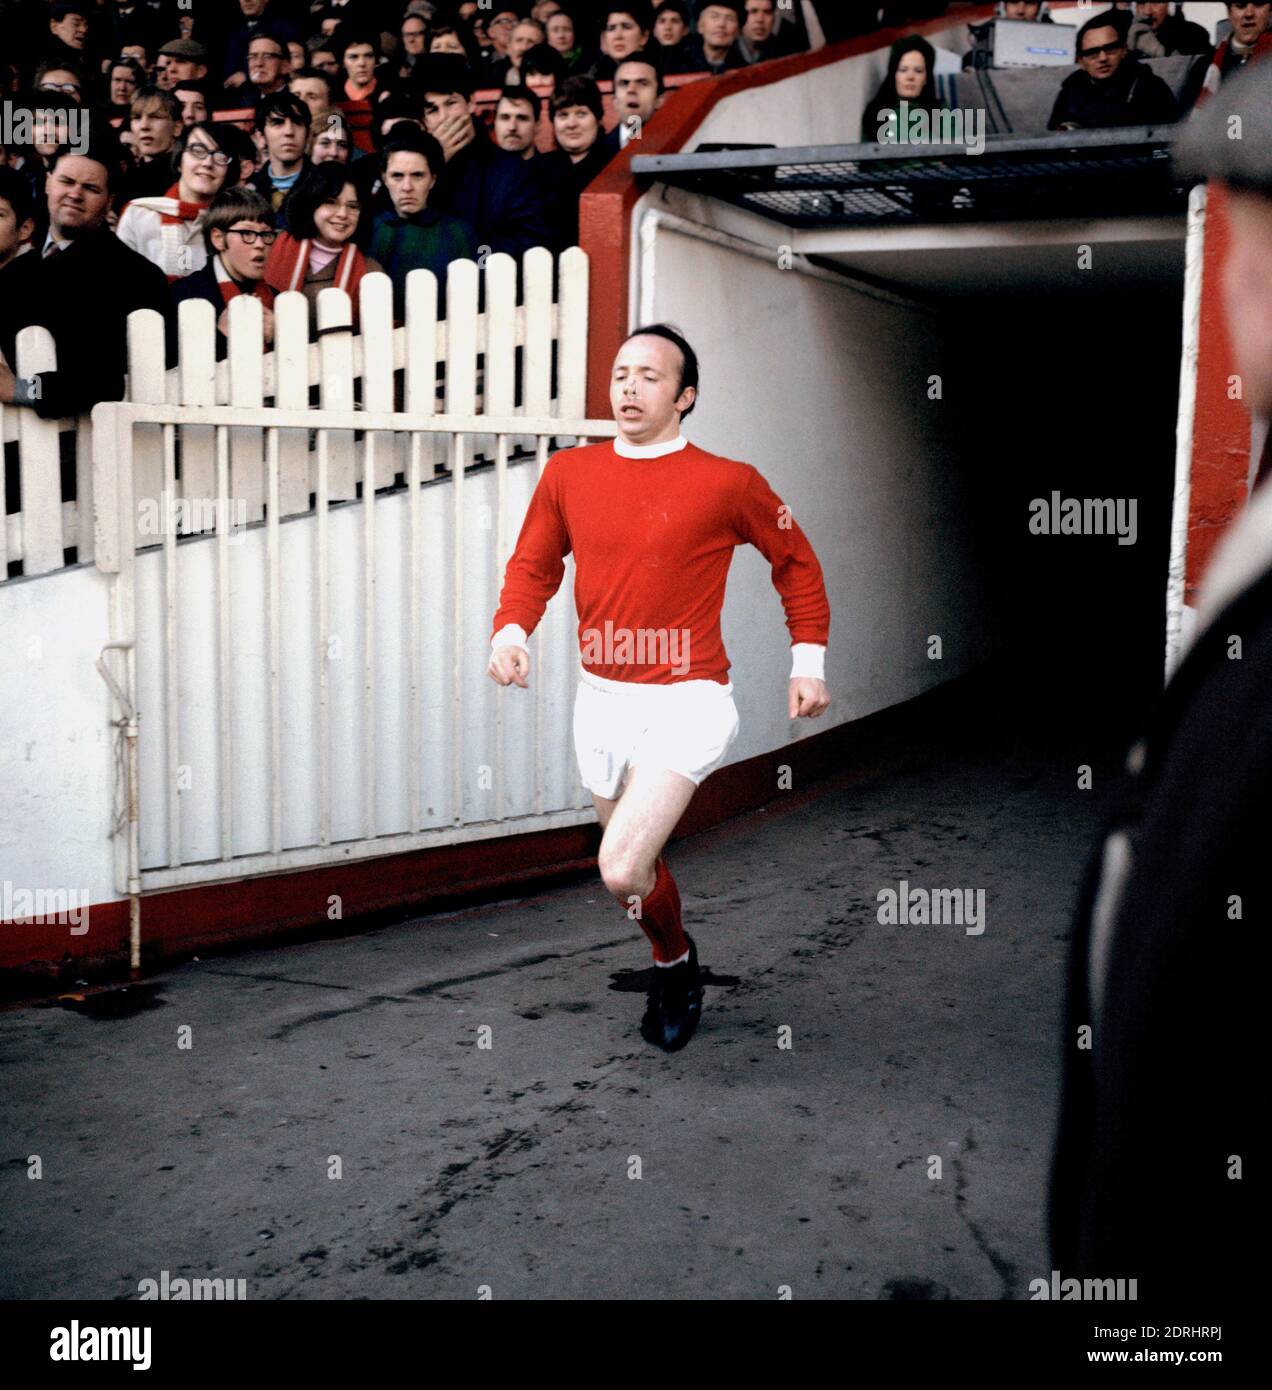 Aktenfoto vom 08-03-1969 von Nobby Stiles, Manchester United. Stockfoto